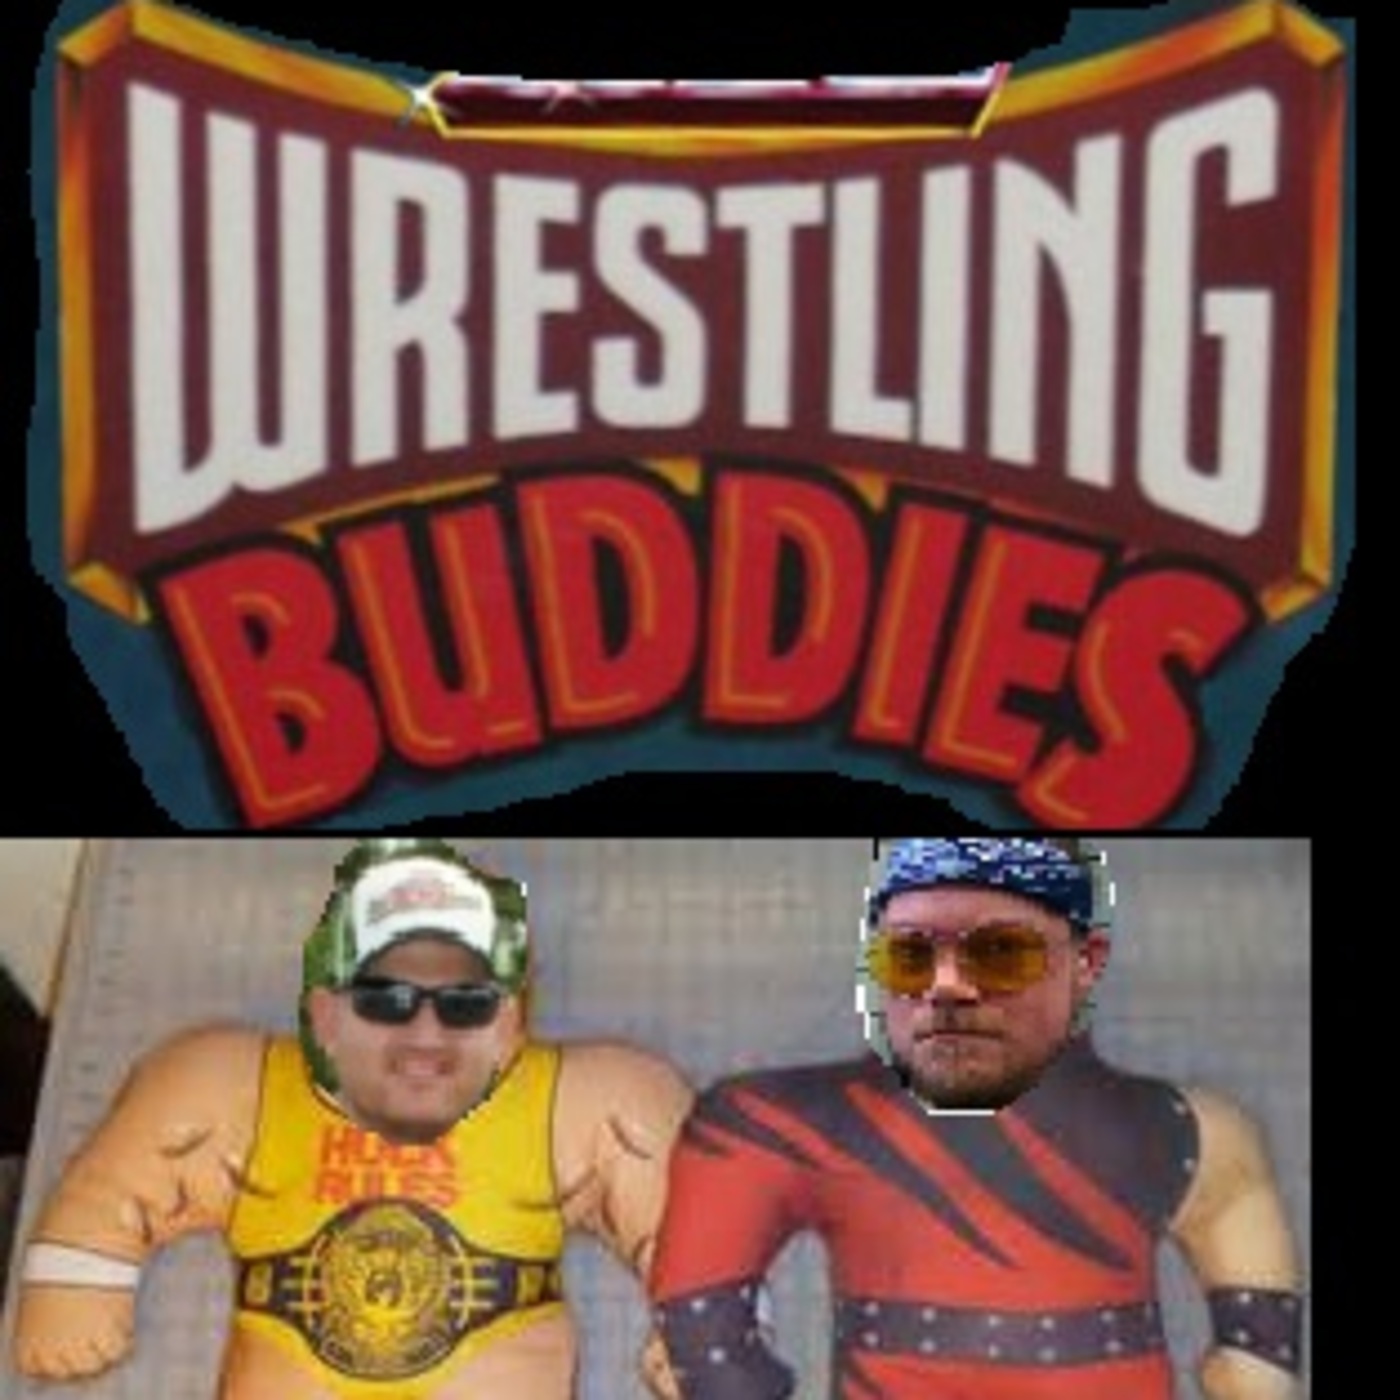 Wrestling Buddies